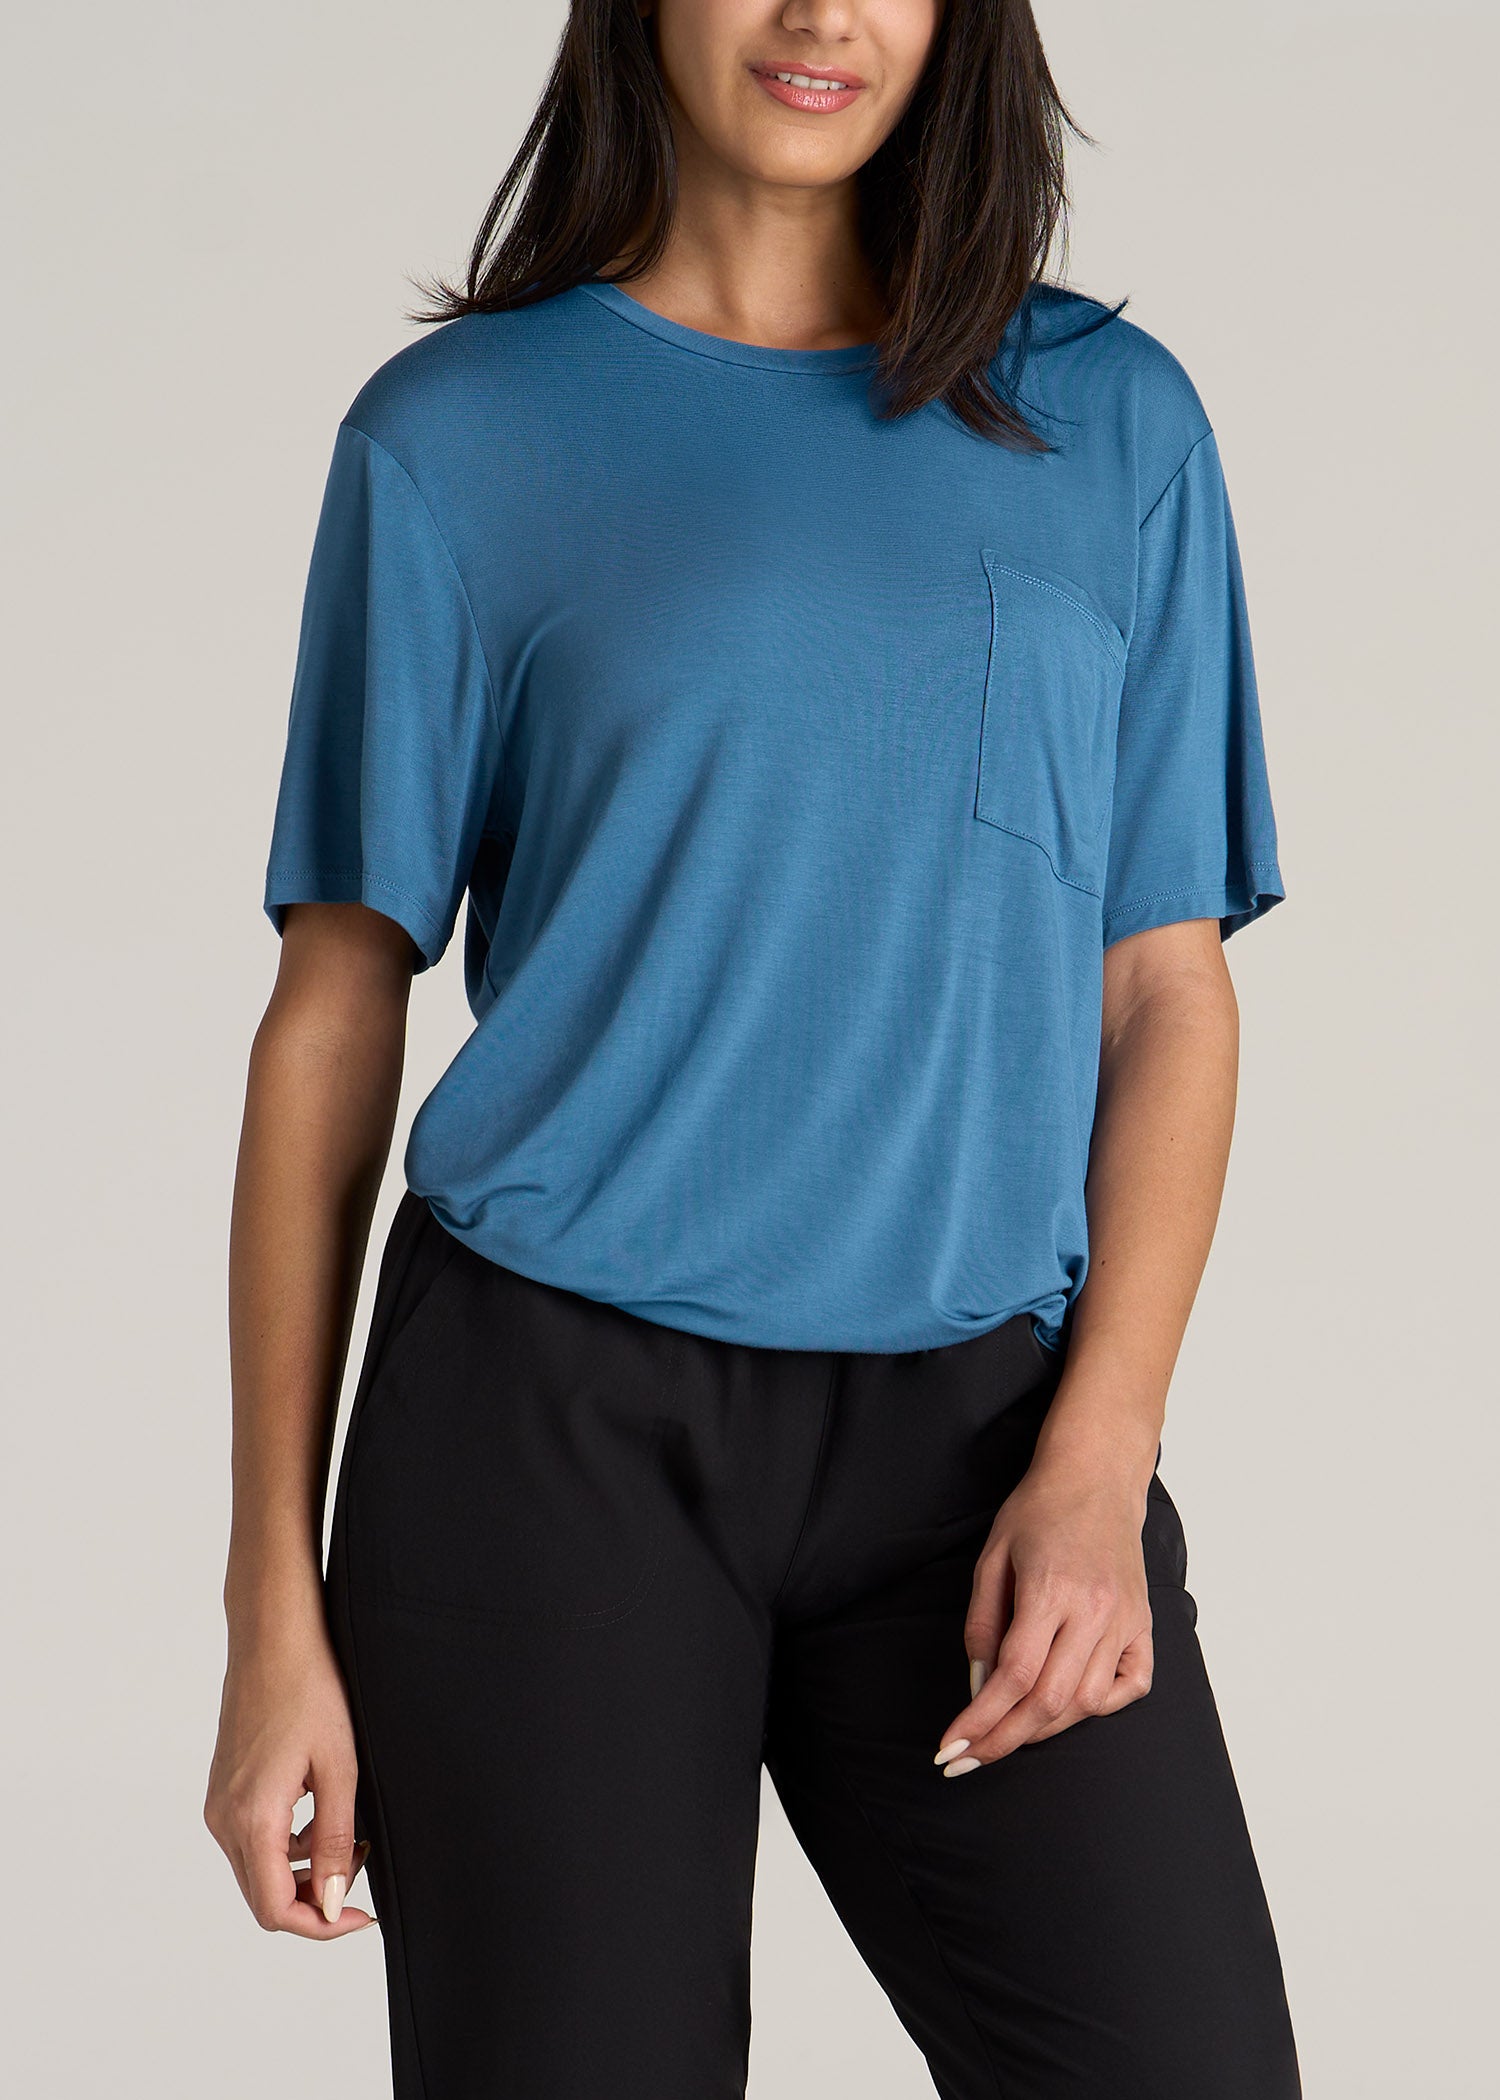 Women's Short-Sleeve Oversized Crewneck Pocket Blue T-Shirt – Tall